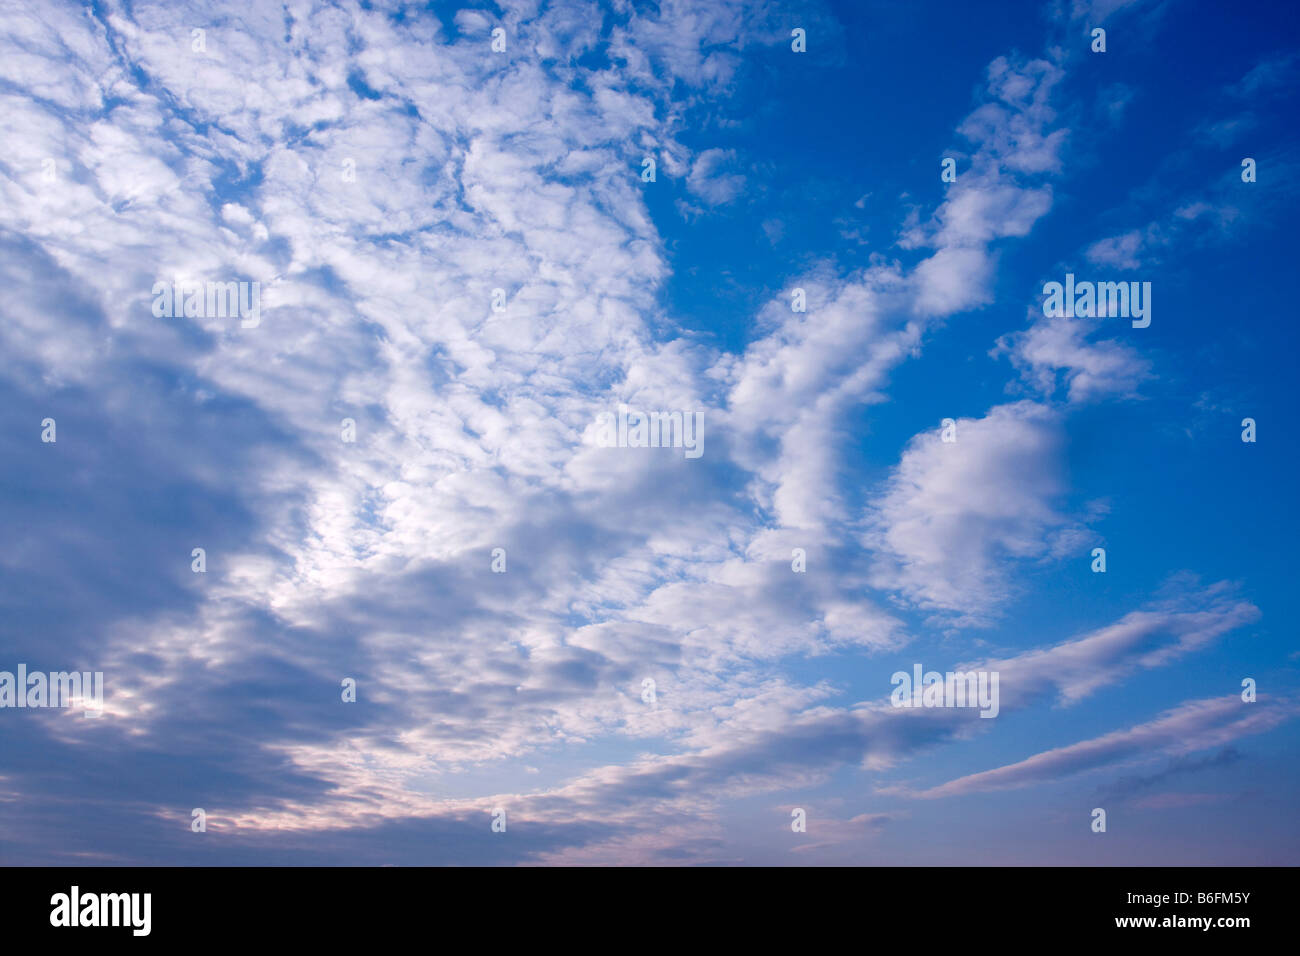 Mackerel sky Stock Photo